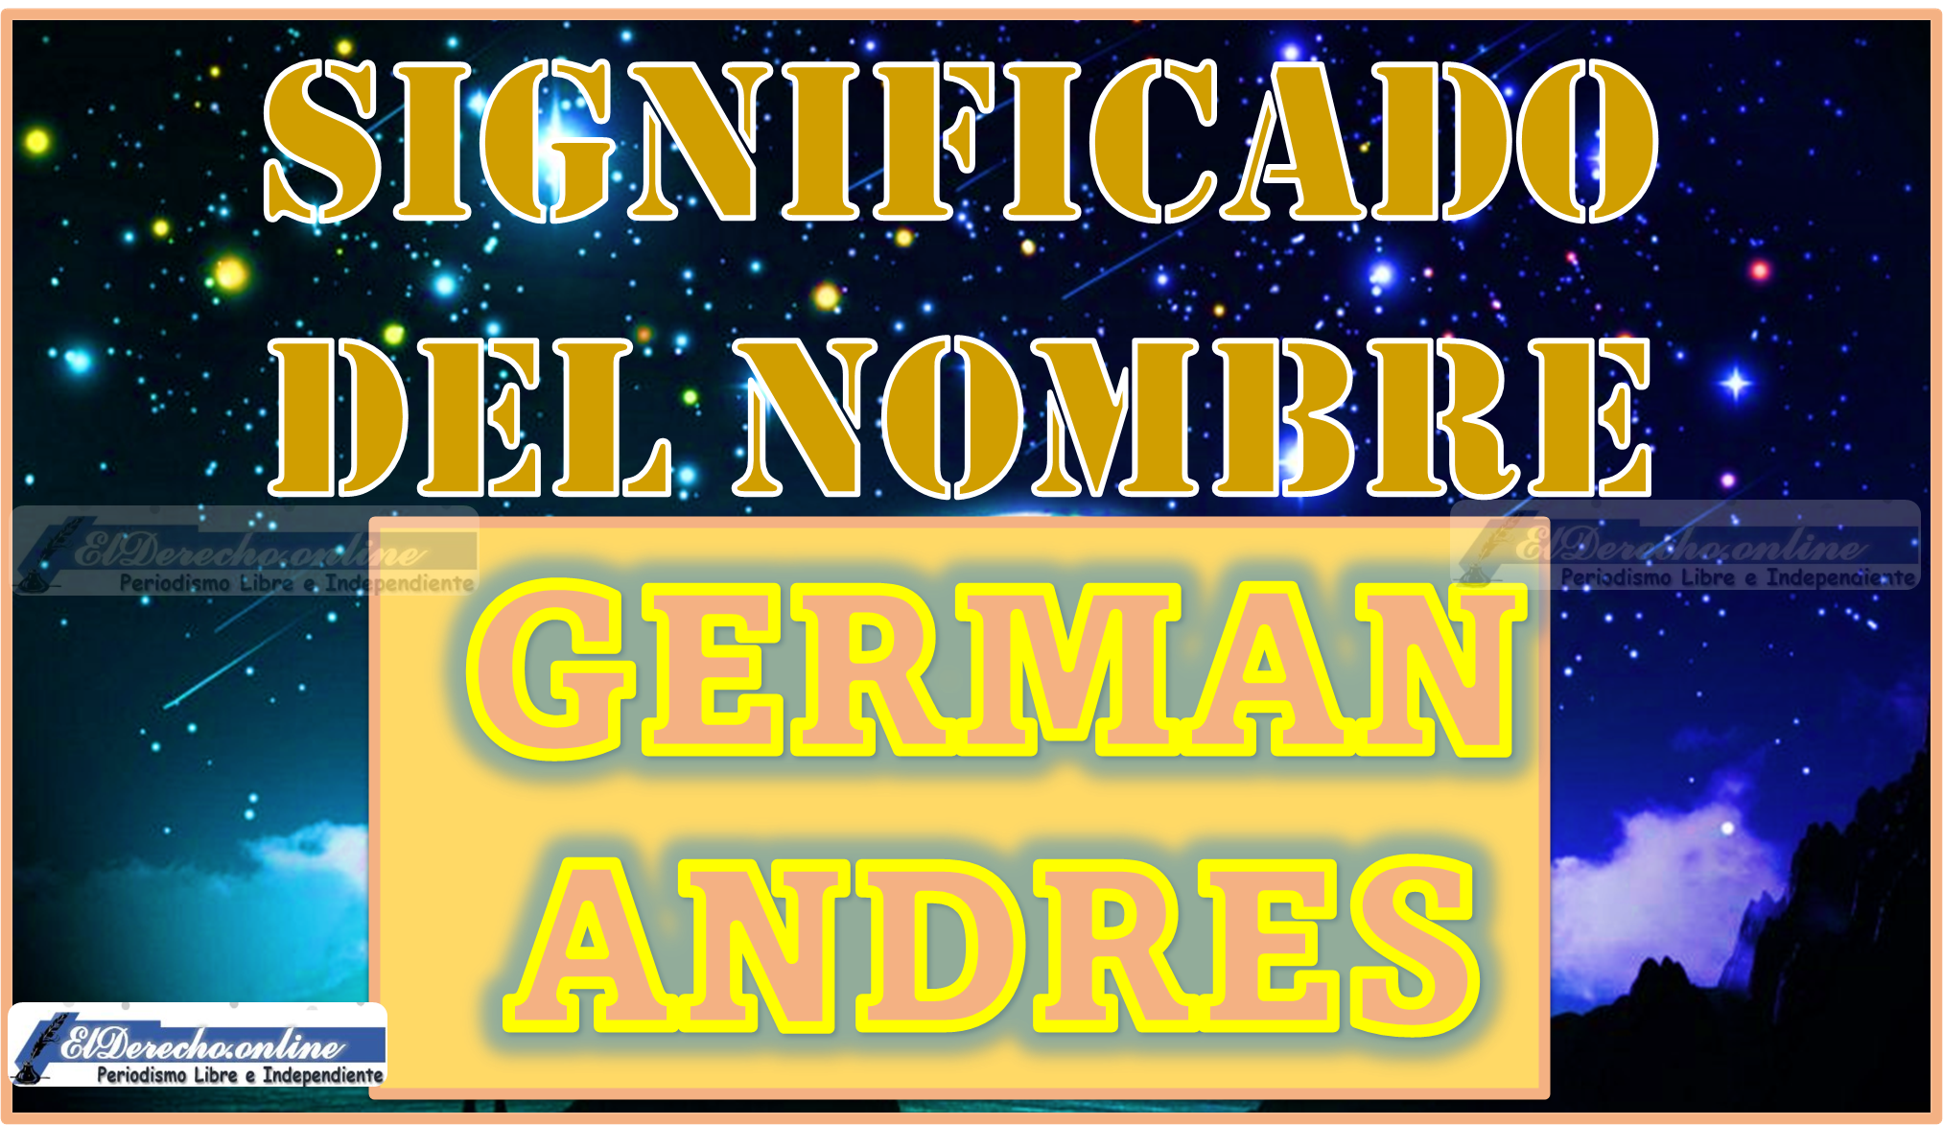 Significado del nombre Germán Andrés, su origen y más